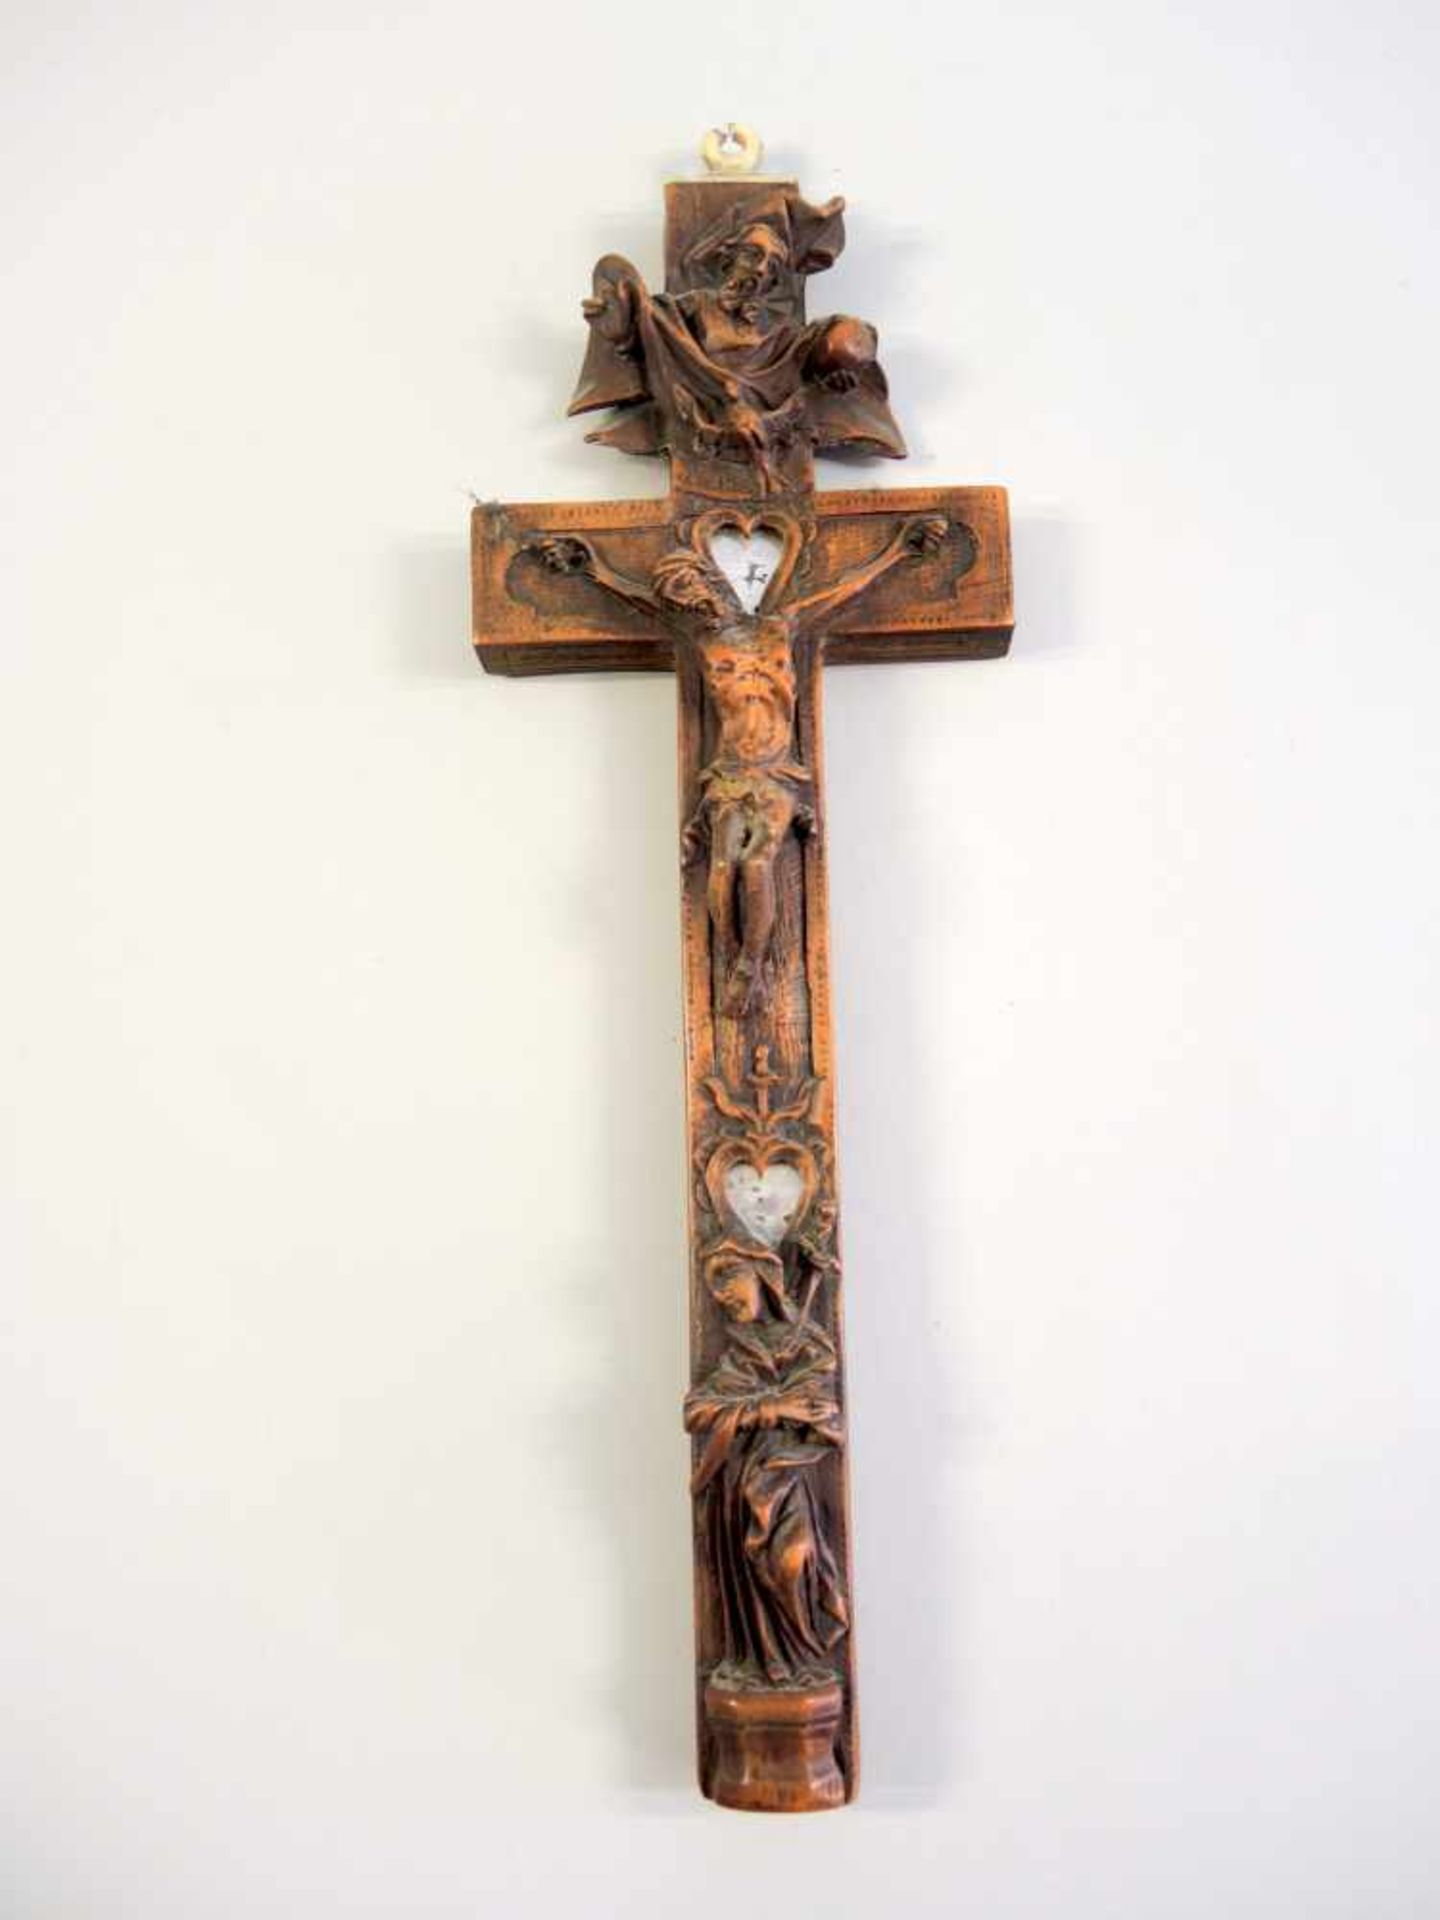 zurÃ¼ckgezogen / withdrawn---ReliquienkreuzHolz, geschnitzt und Bein. Darstellung des leidenden